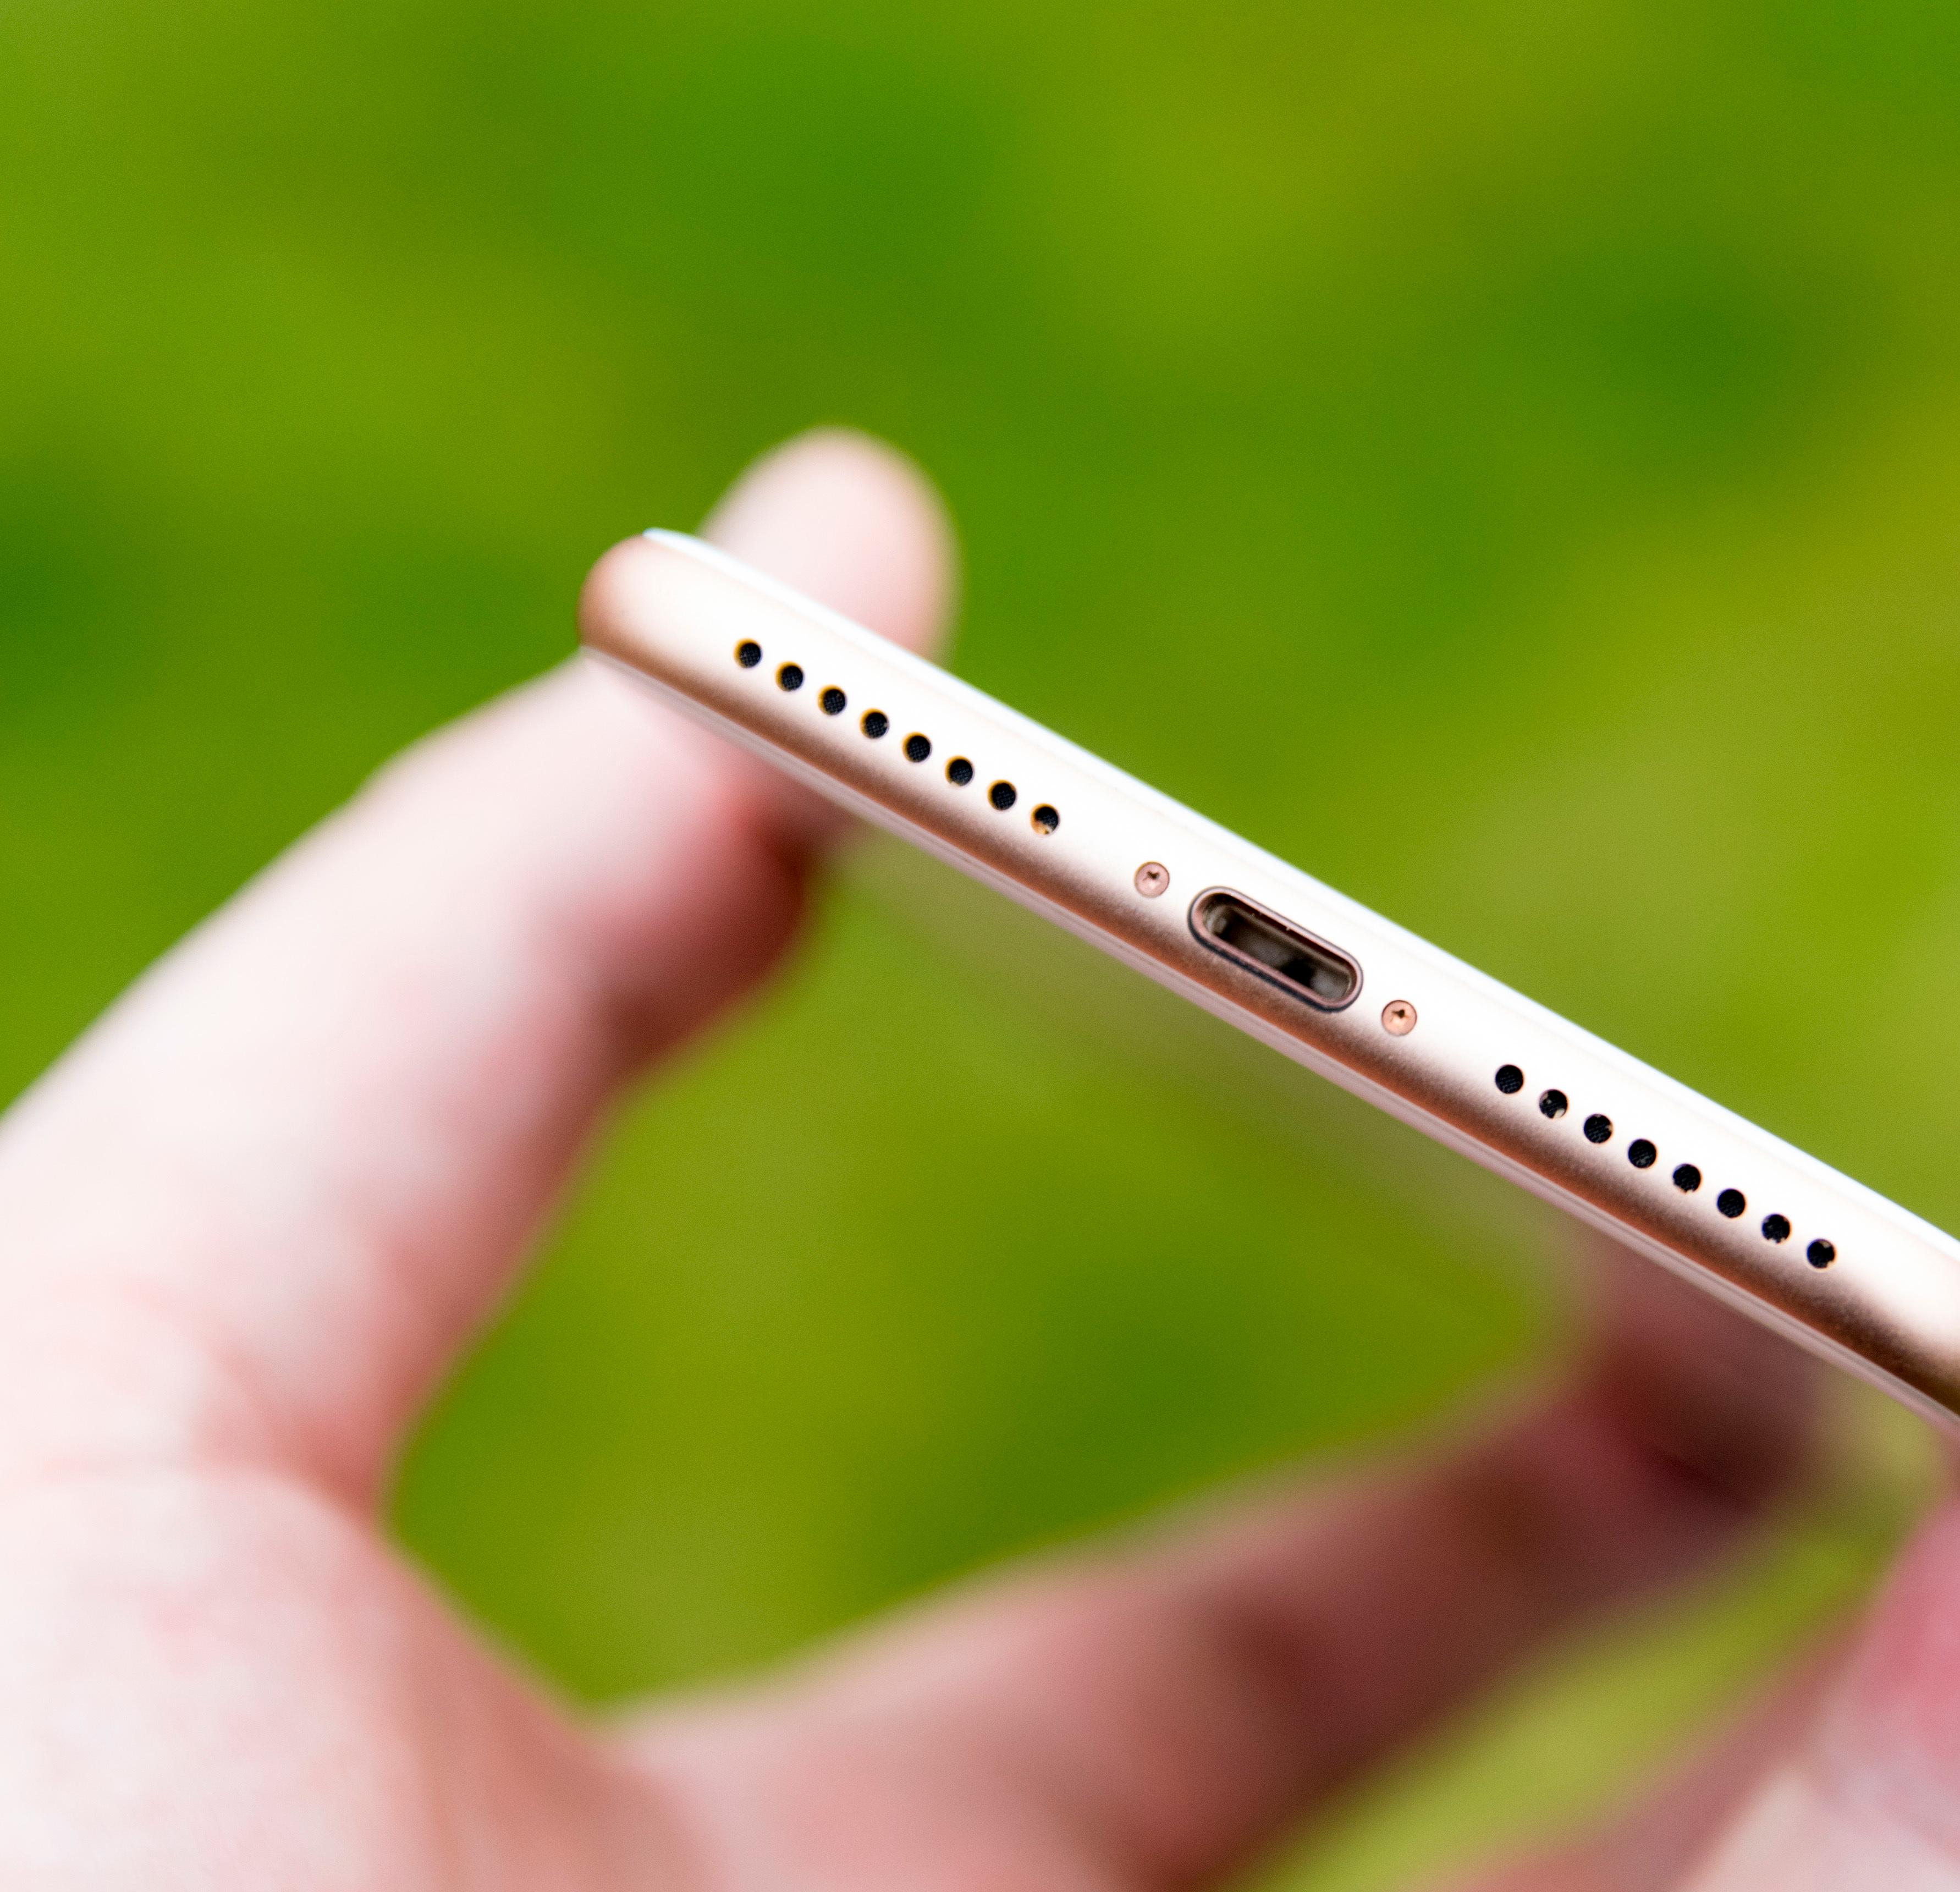 De ulempene iPhone 8 Plus har finner du i bunnen av telefonen. Her er det ikke hodetelefonkontakt, og hurtiglader koster mye penger i tillegg. Men telefonen har noen av markedets beste stereohøyttalere.